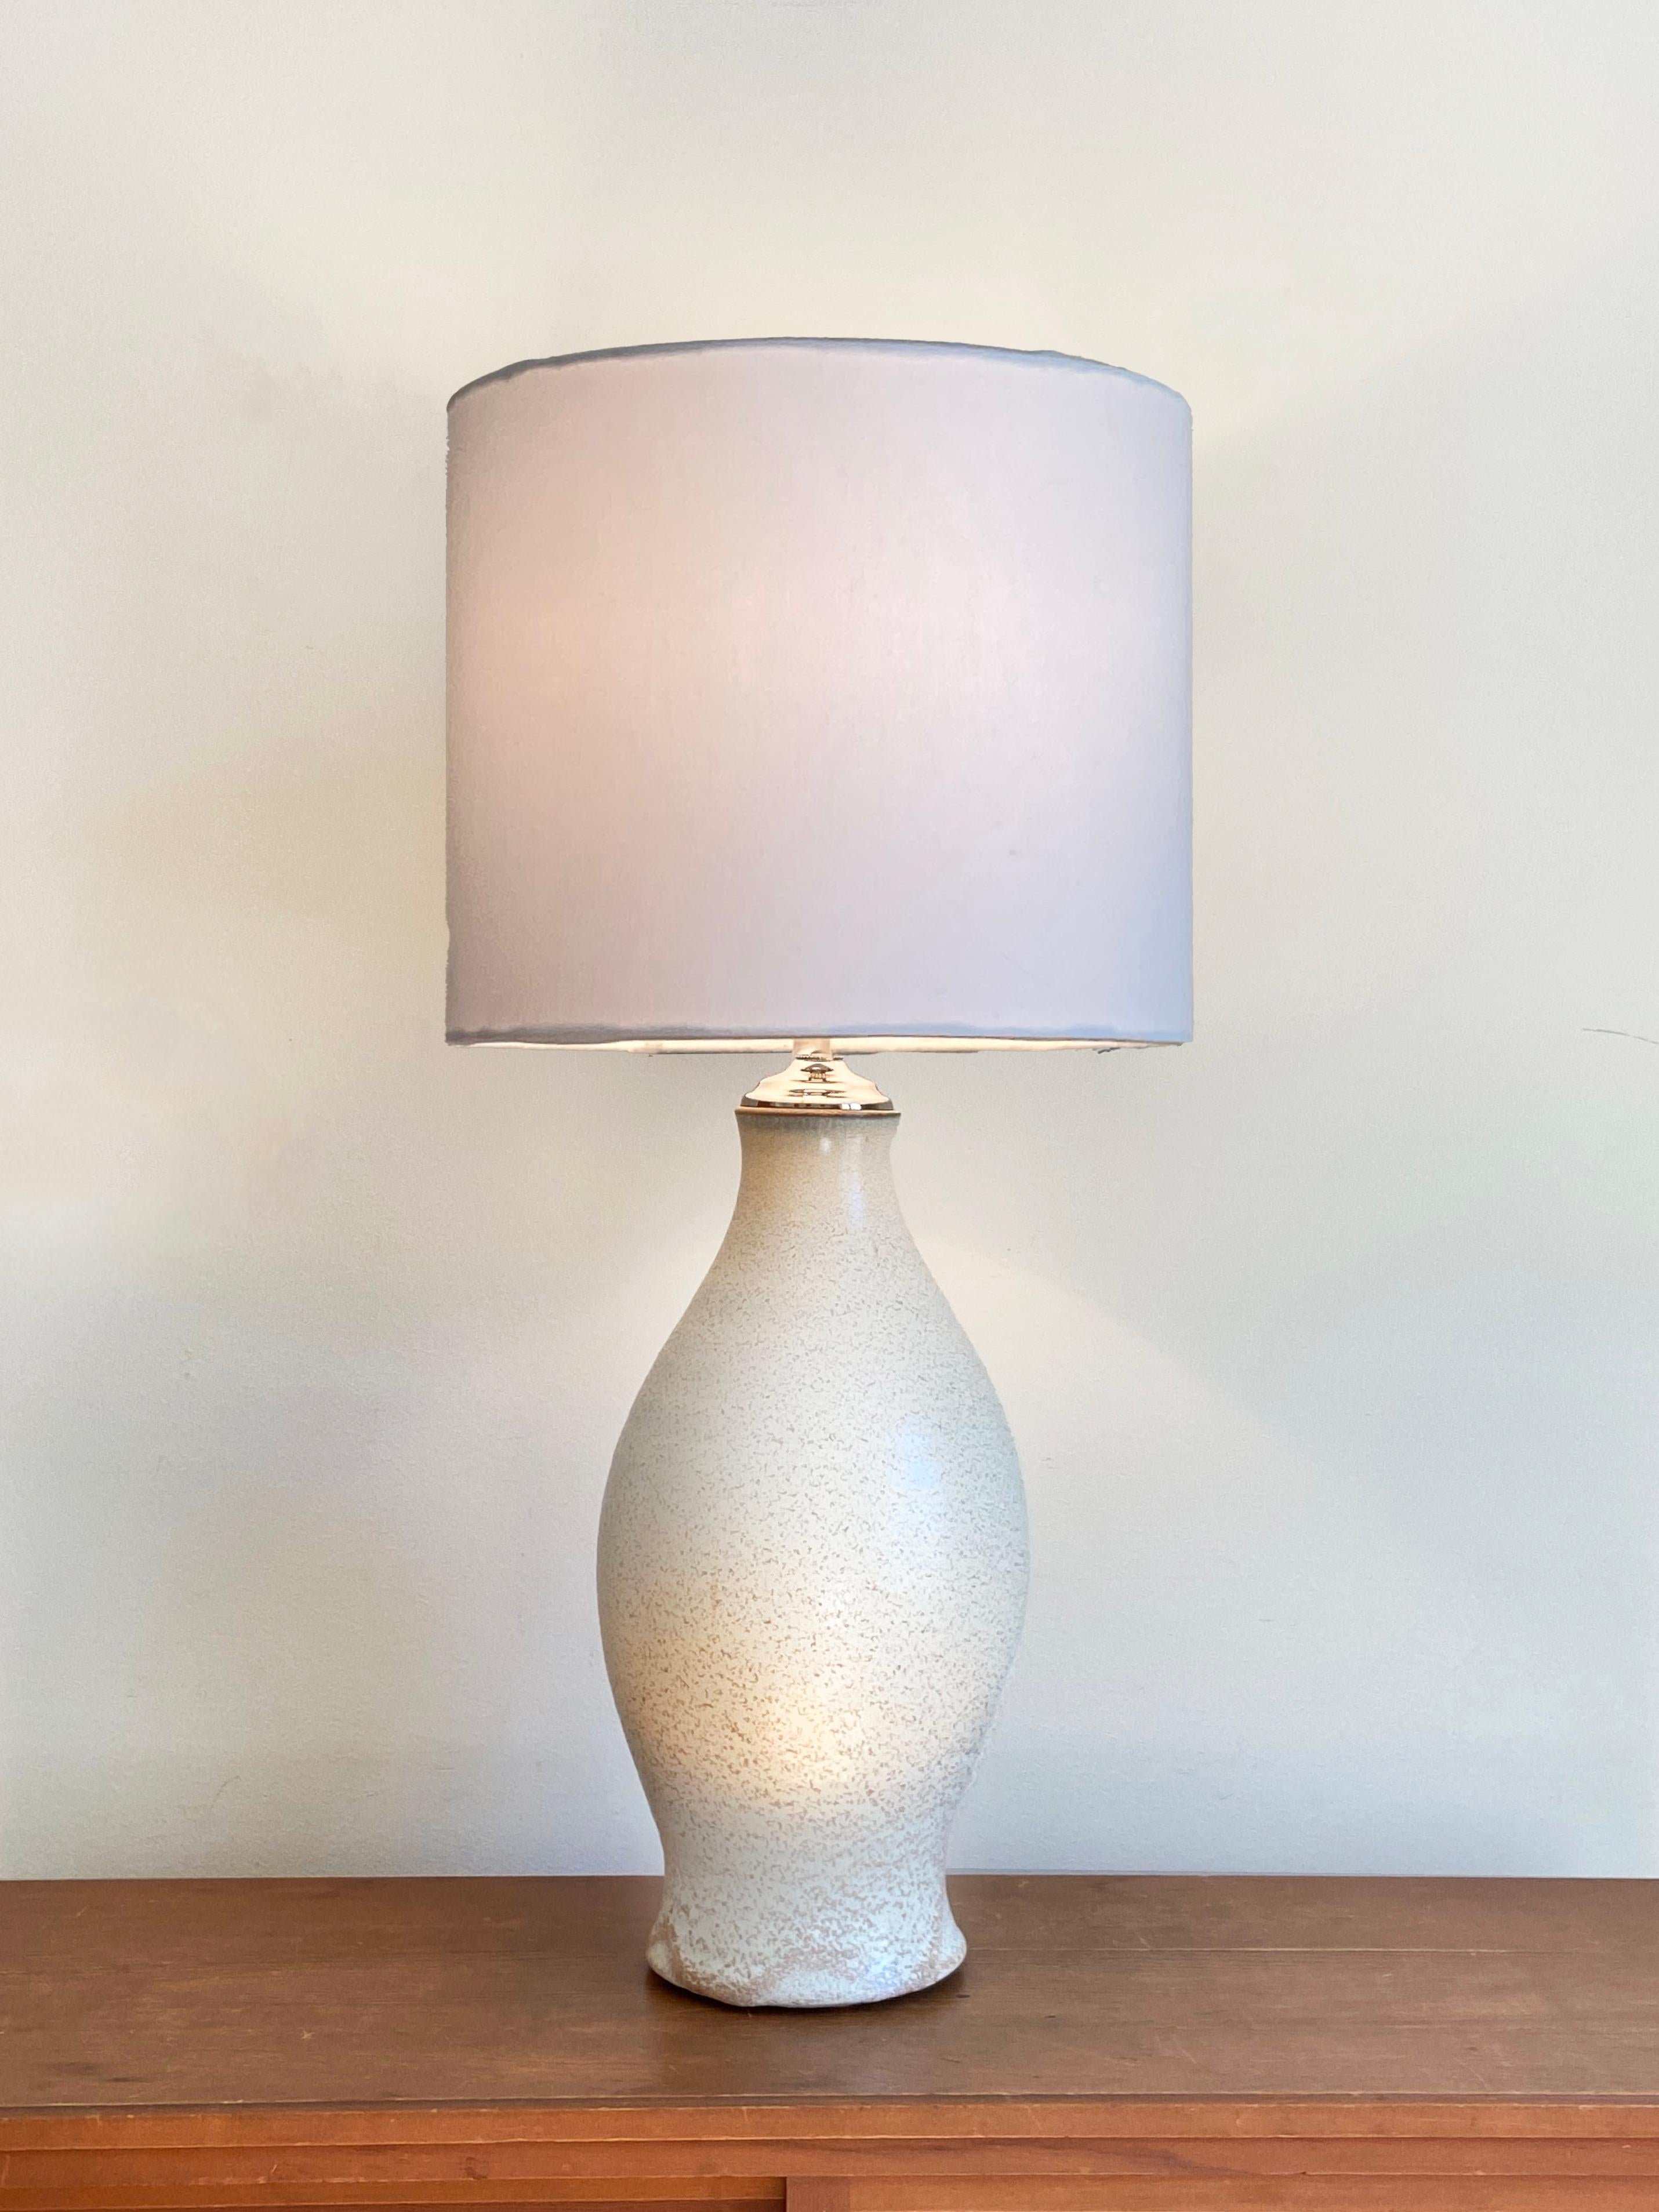 Handgefertigte große, hohe, wheelgedrehte Lampe von Olivia Barry / By Hand - 18